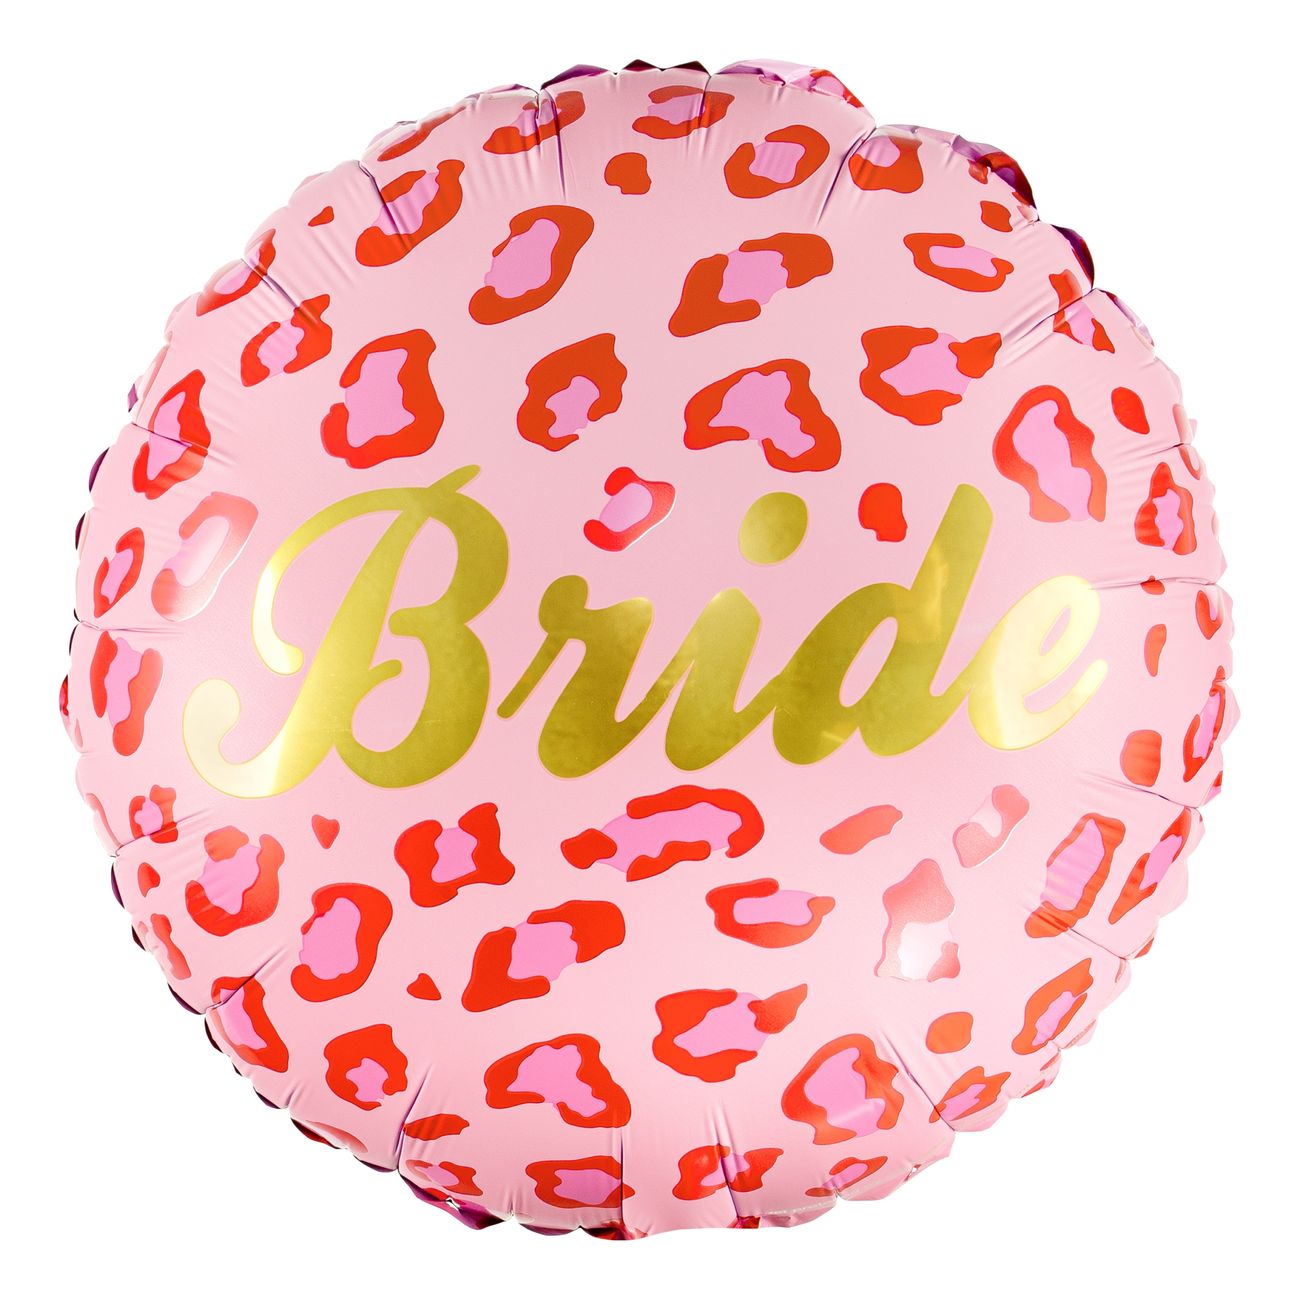 folieballong-bride-leo-94678-1